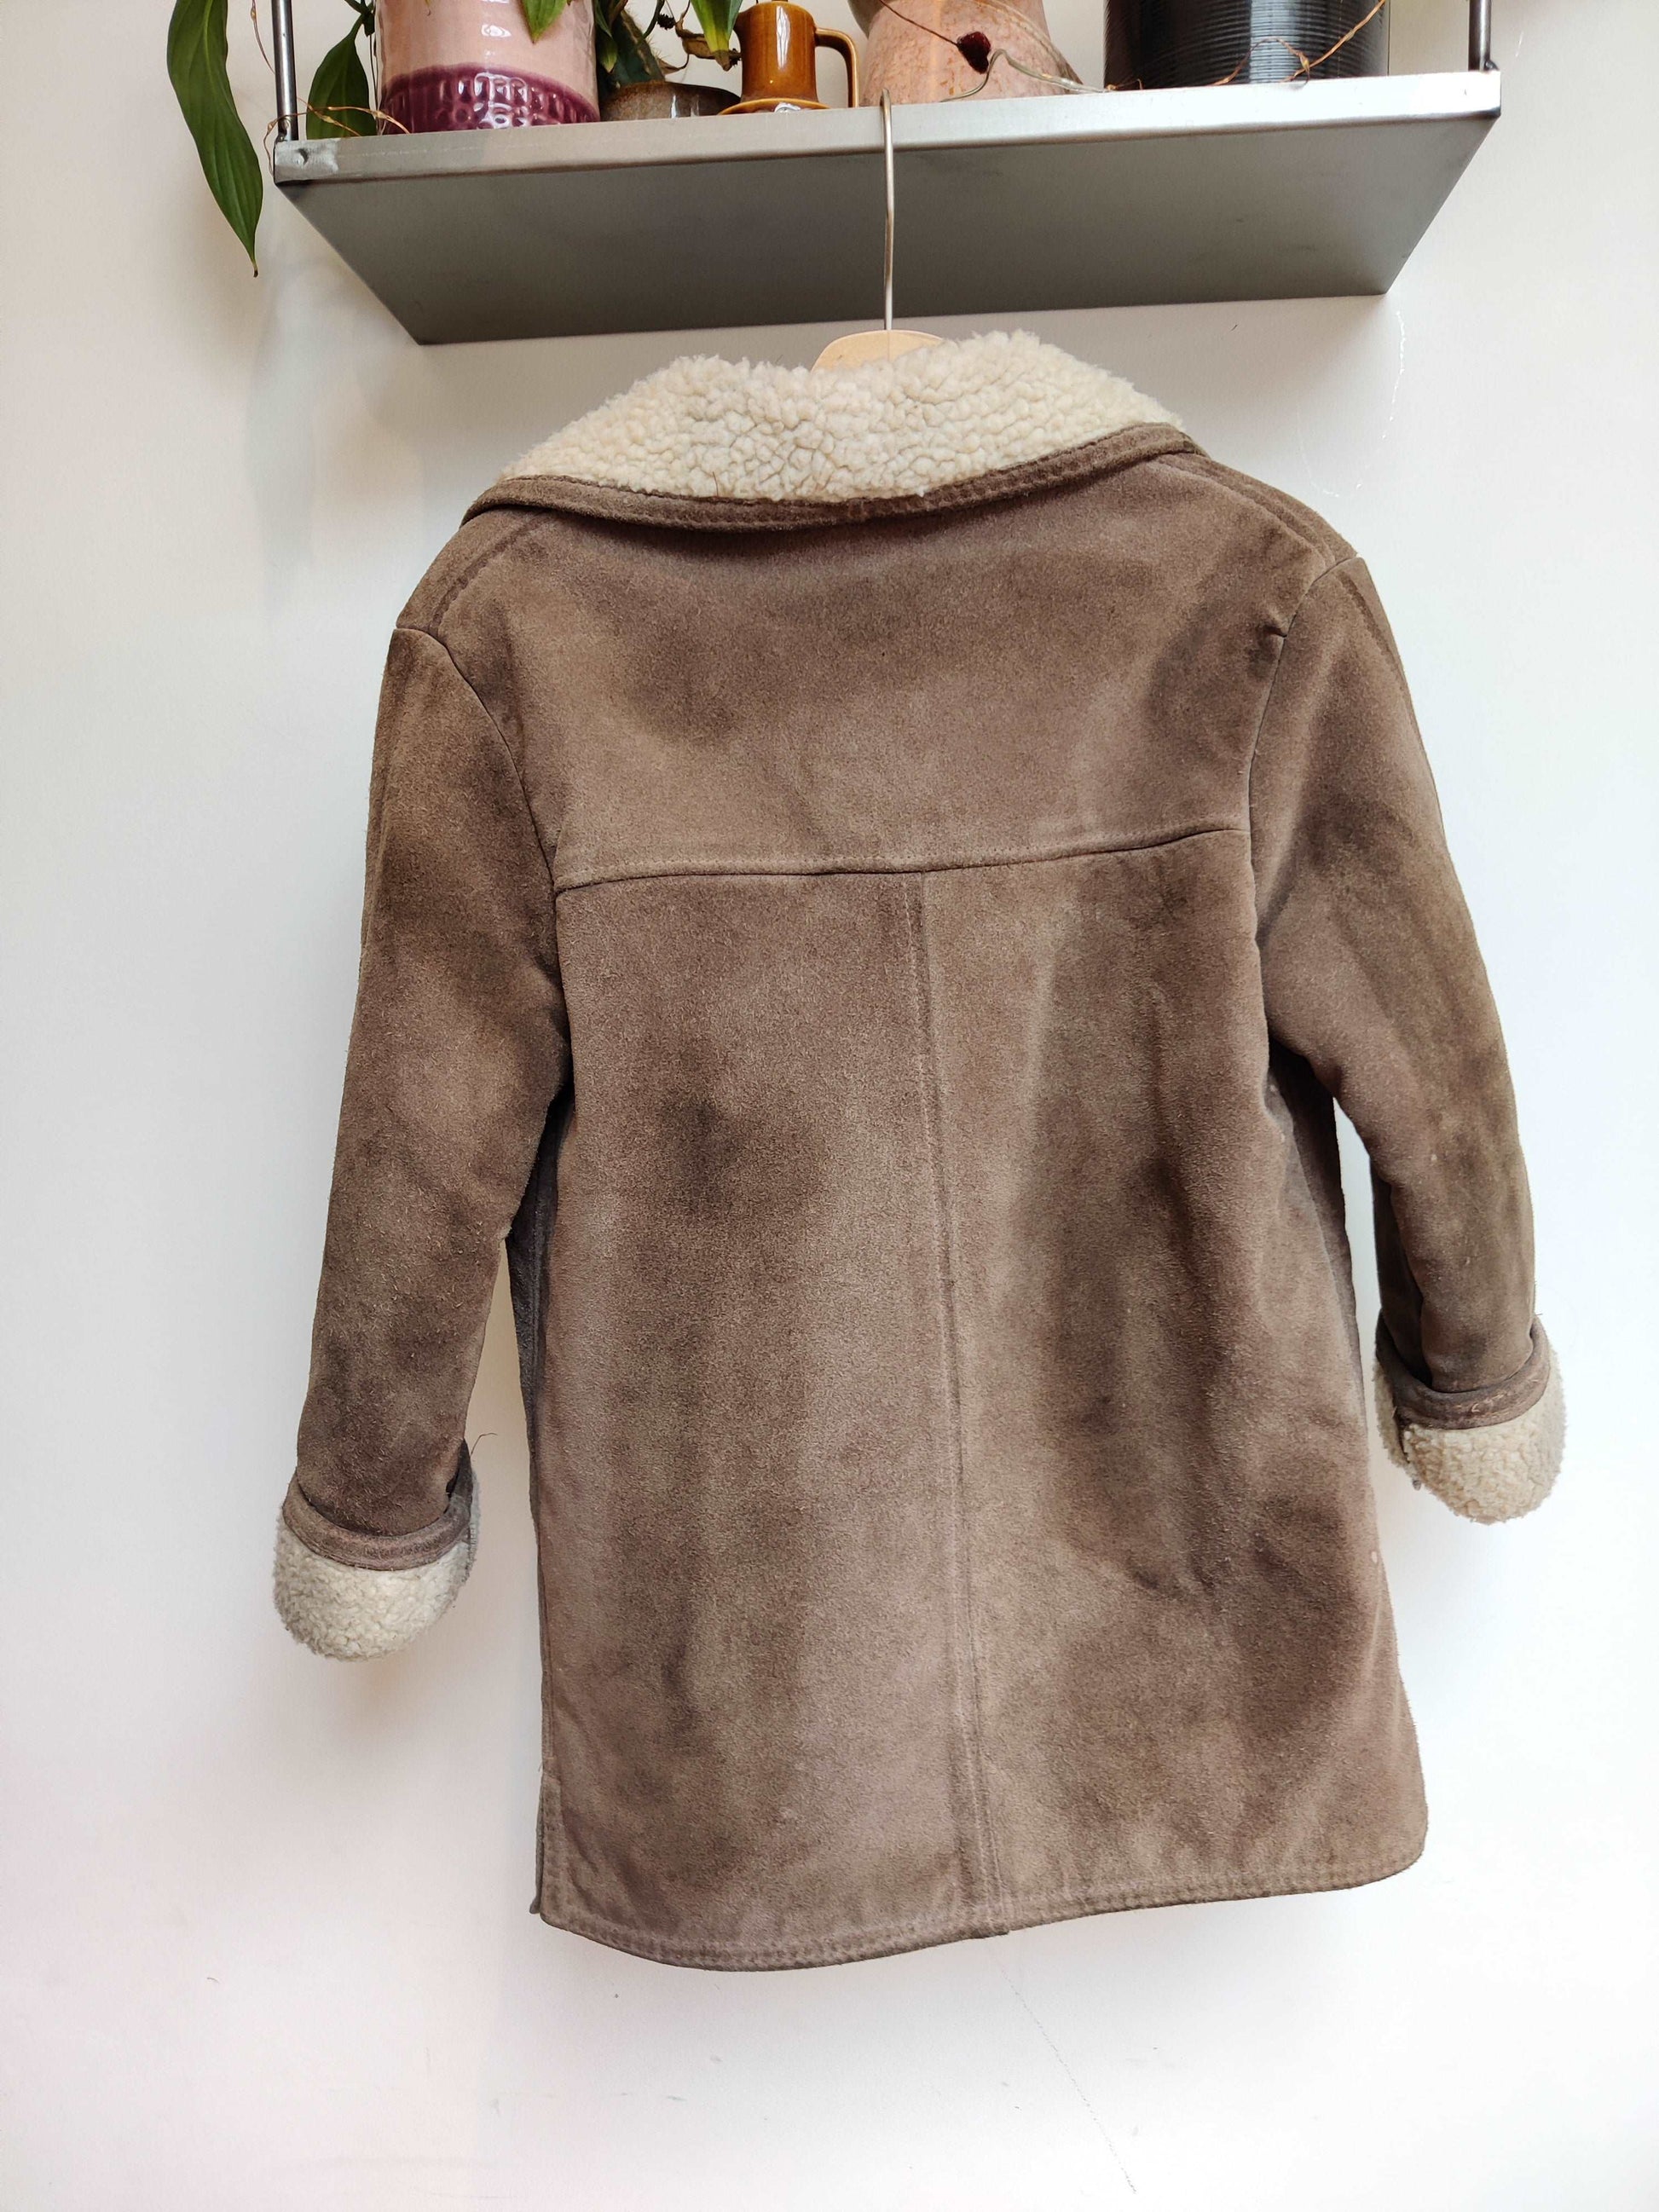 Childs vintage sheepskin coat